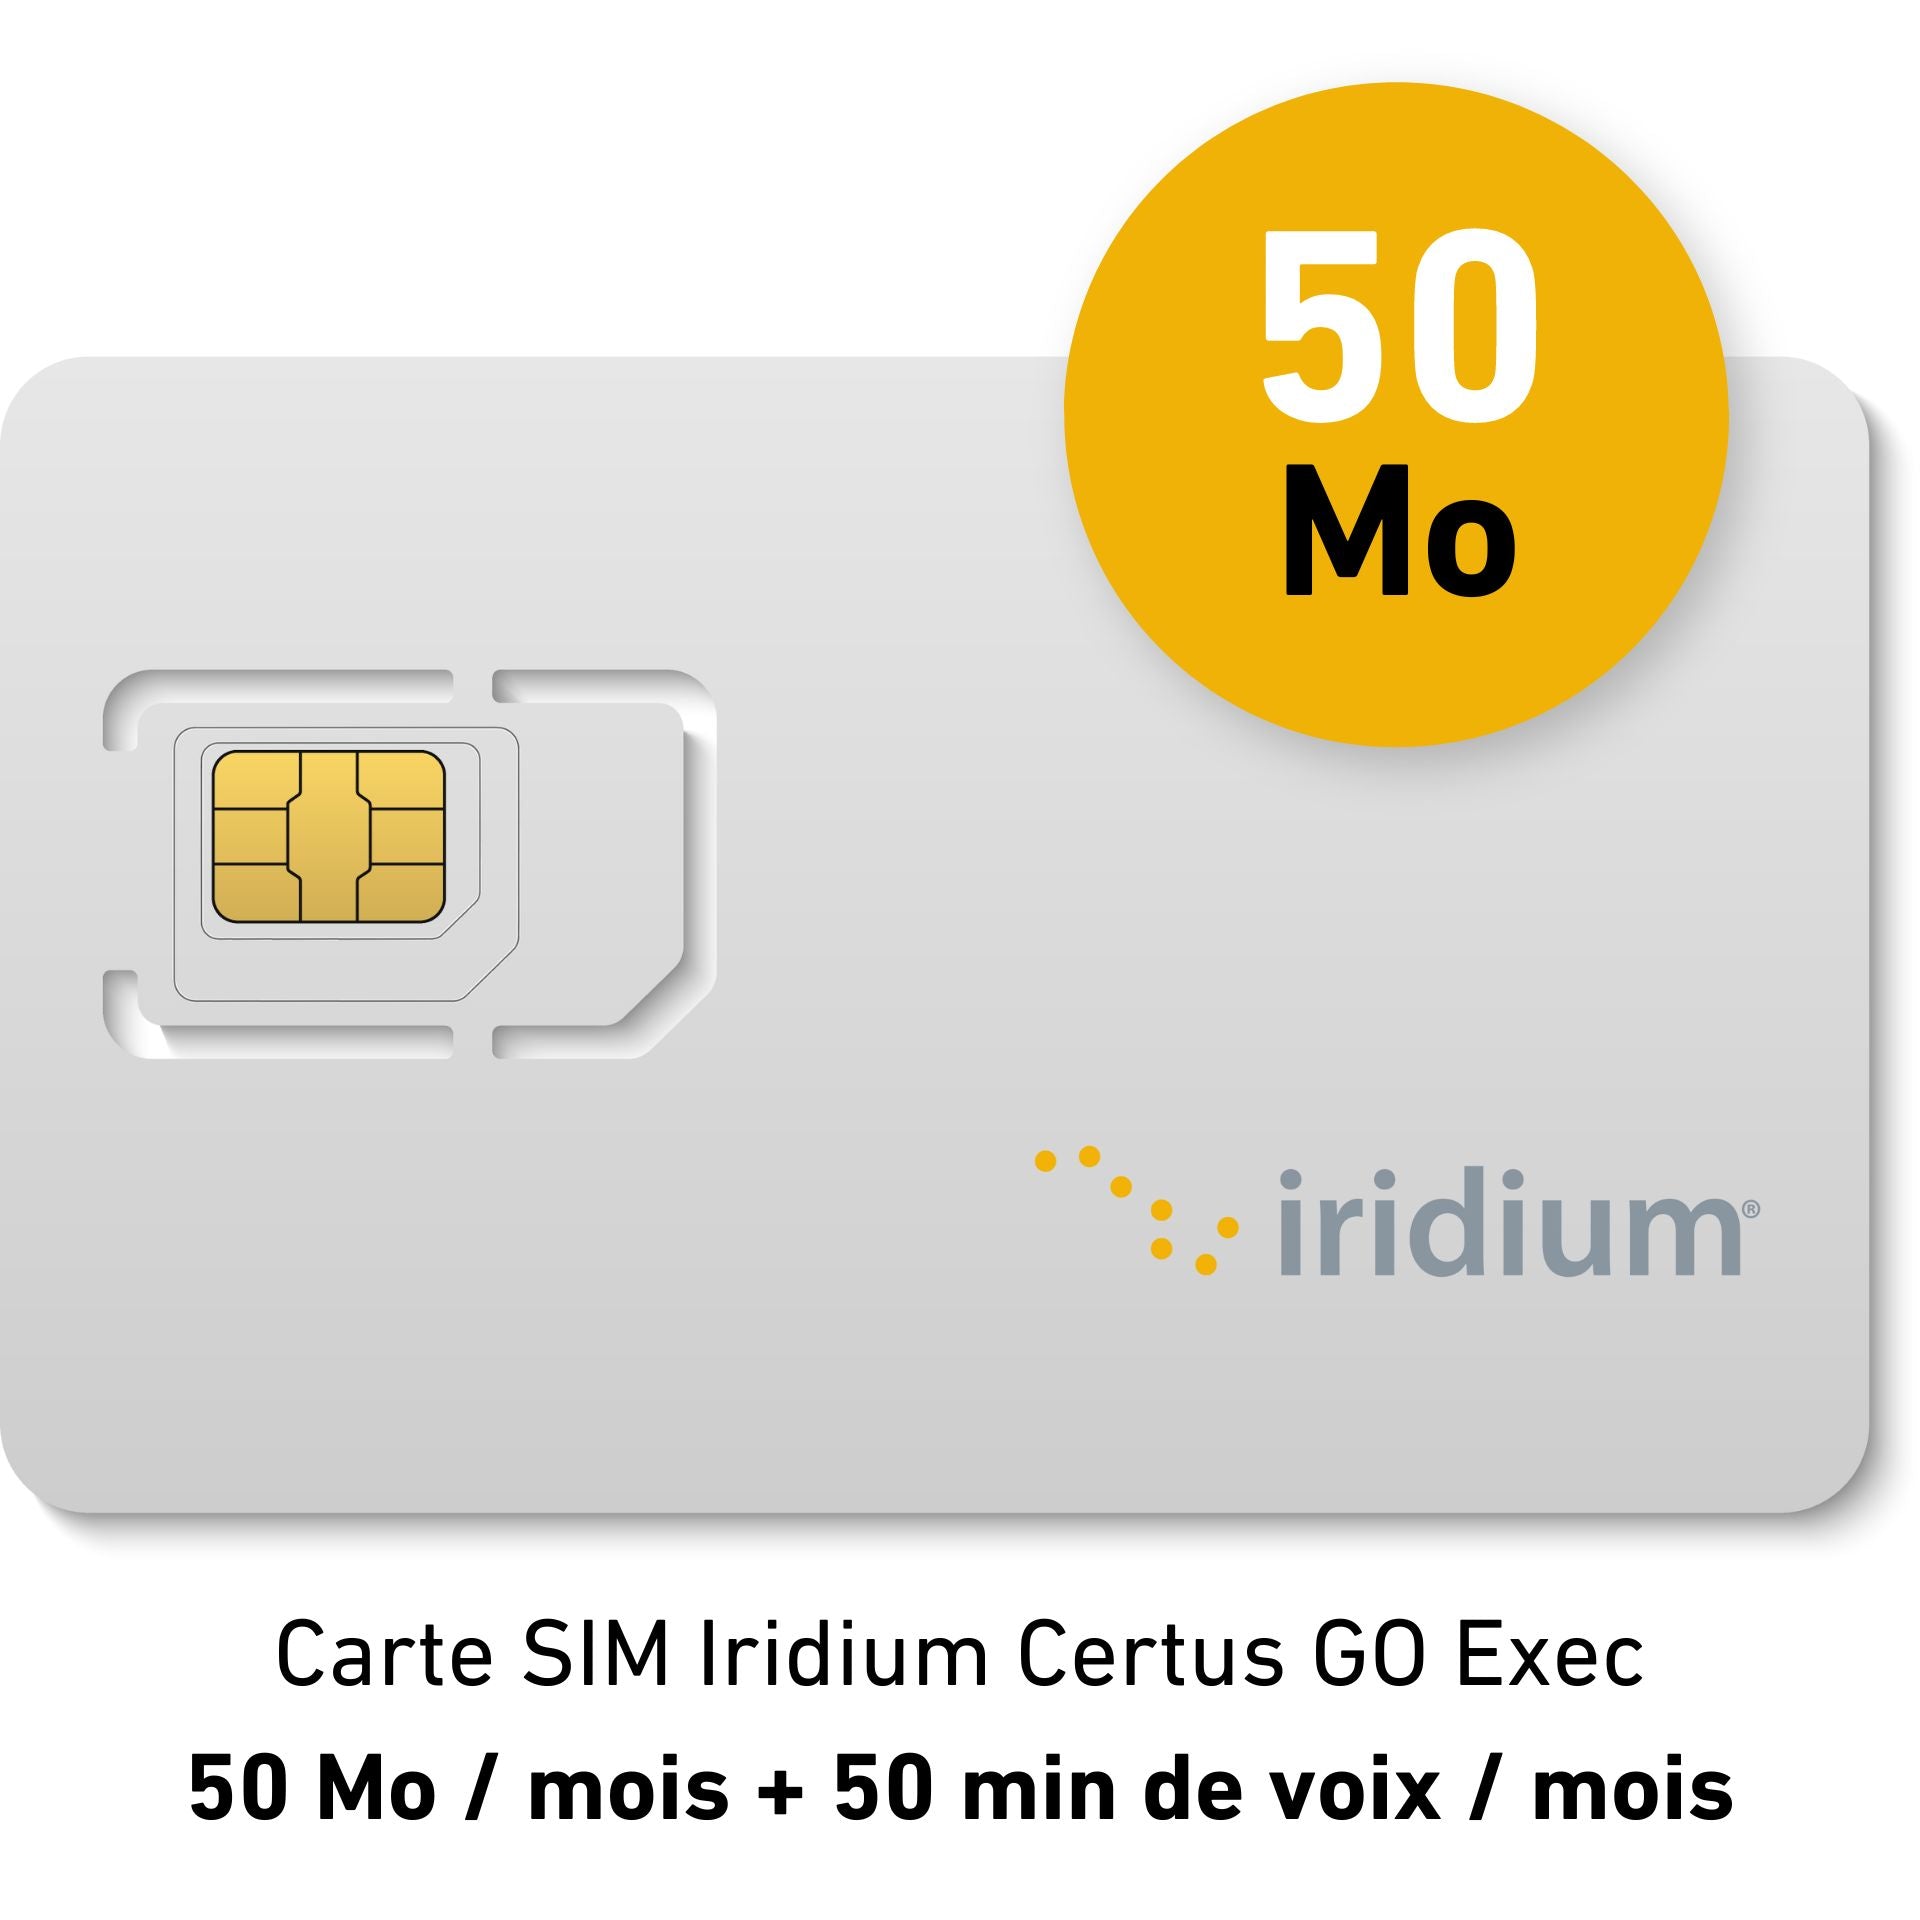 Abonnement Plaisance Mensuel Iridium Certus GO Exec - 50Mo/mois - data doublée + 50 min de voix